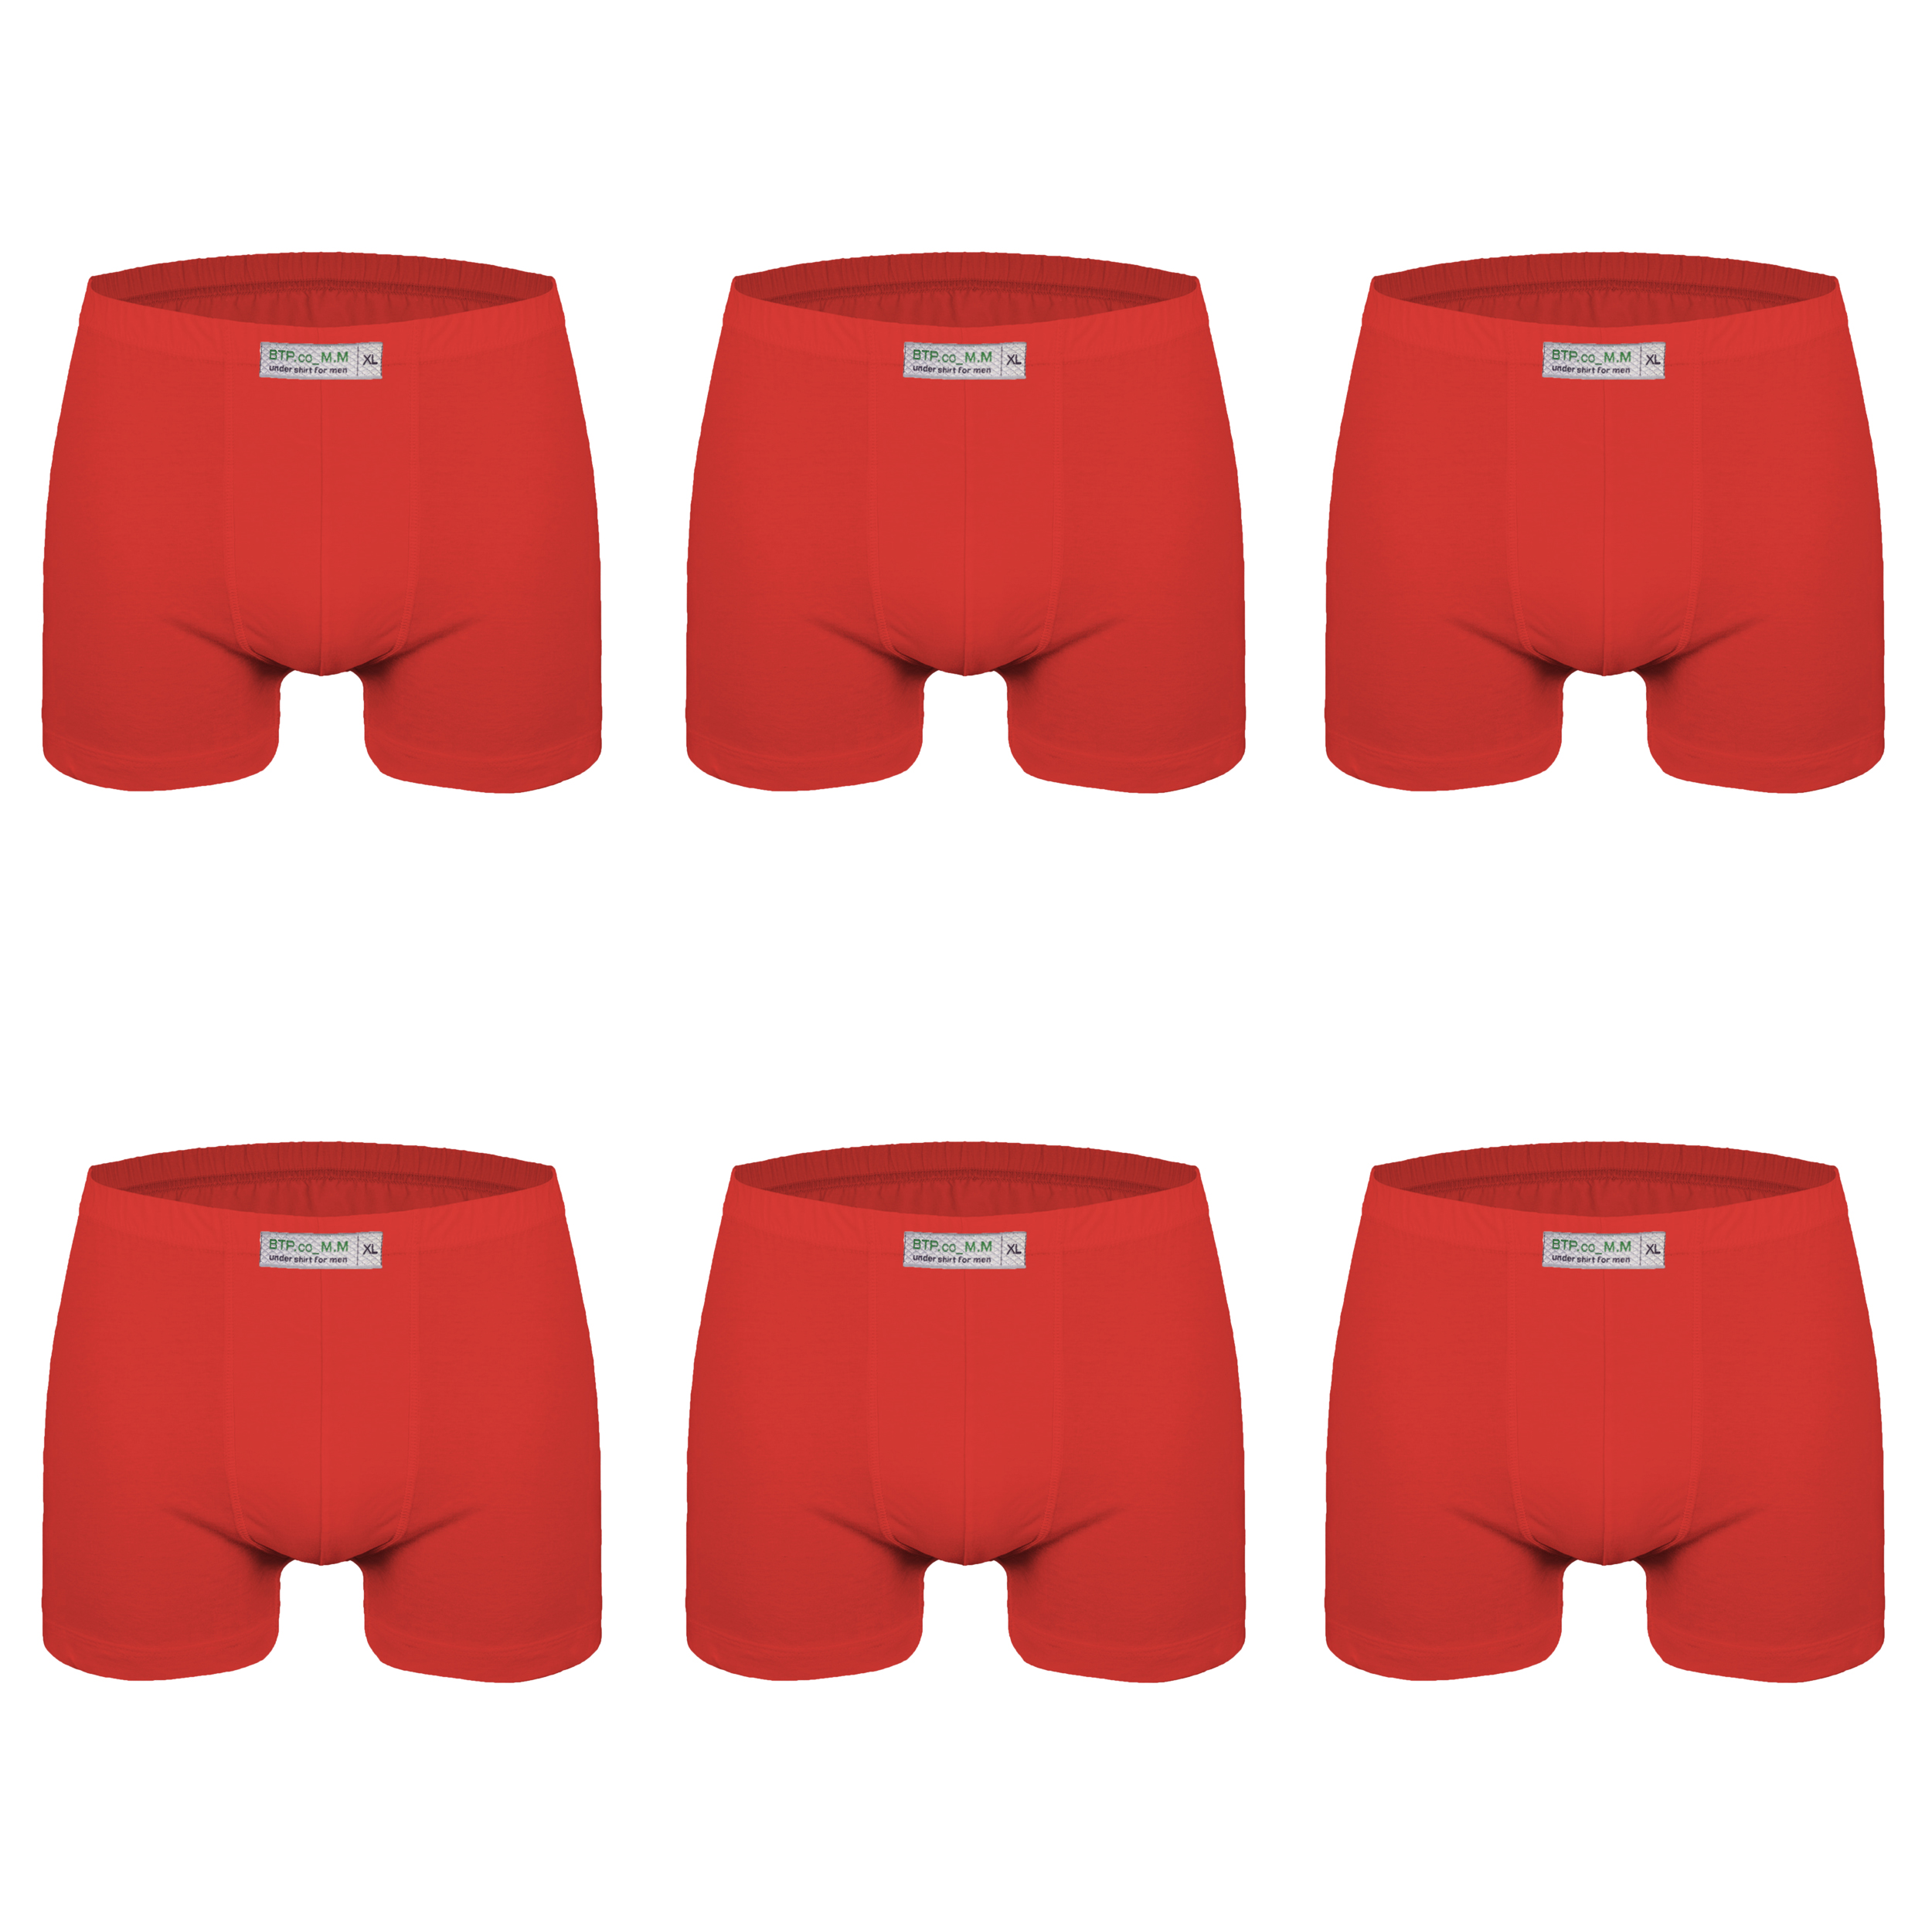 شورت پسرانه برهان تن پوش مدل پادار 2-04 رنگ قرمز بسته 6 عددی